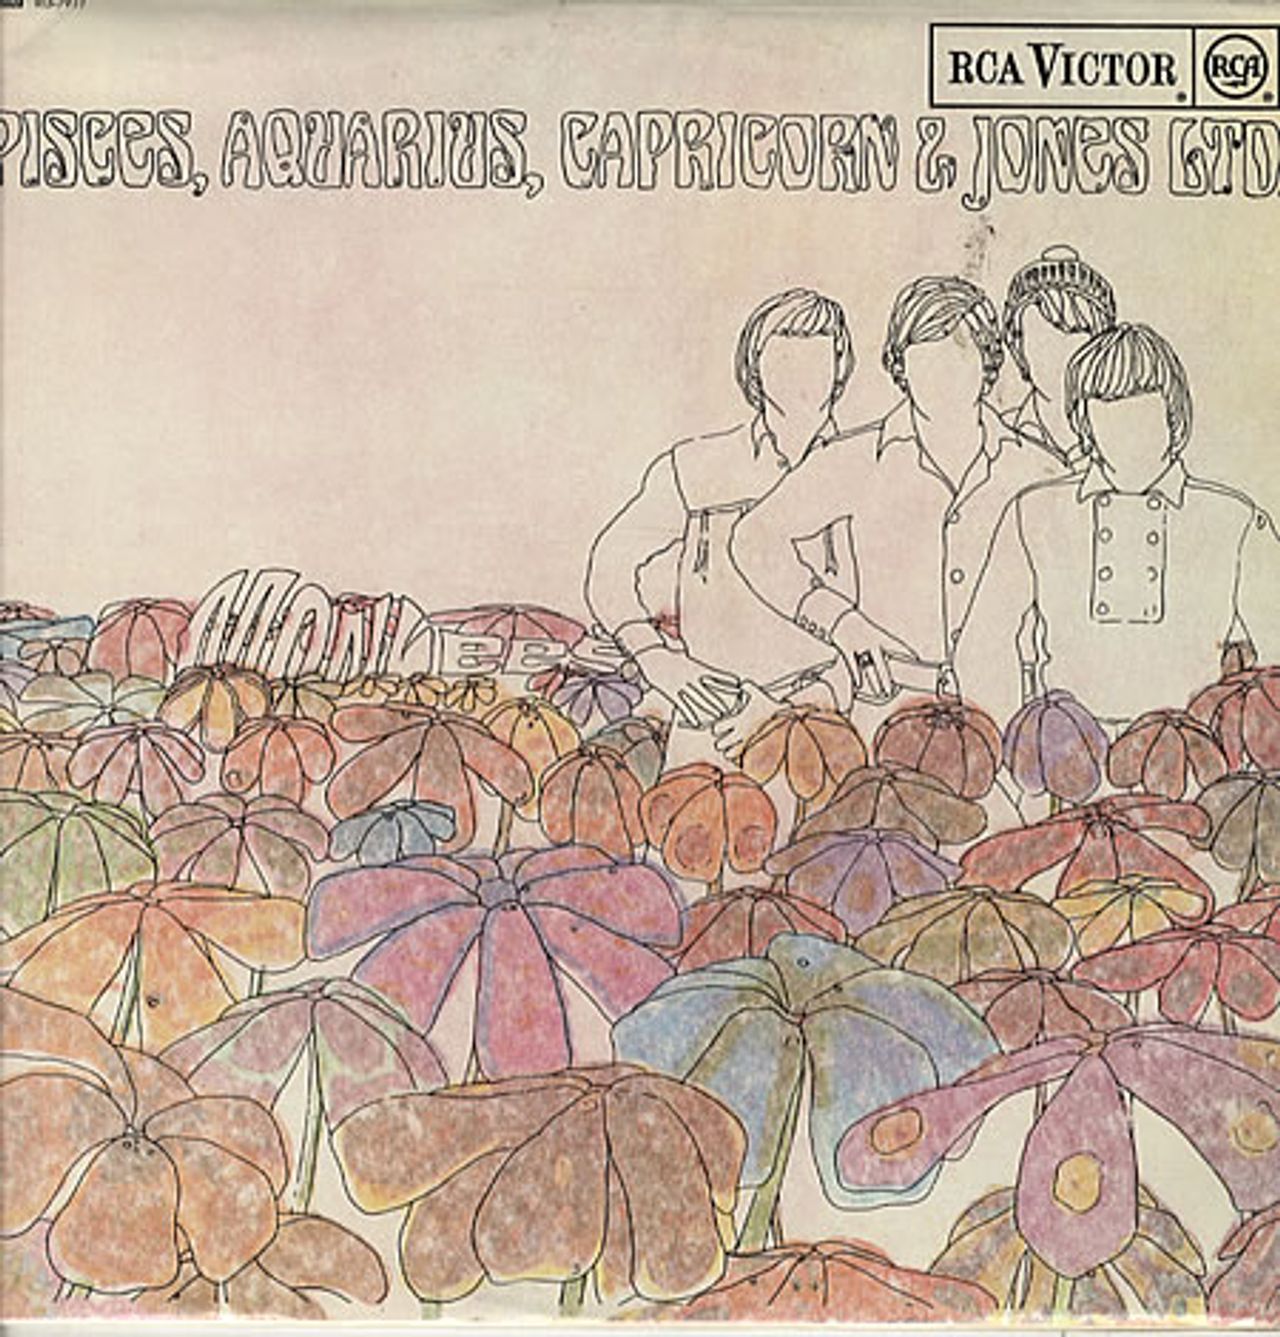 The Monkees Pisces, Aquarius, Capricorn & Jones Ltd. - 1st EX UK vinyl LP album (LP record) RD-7912